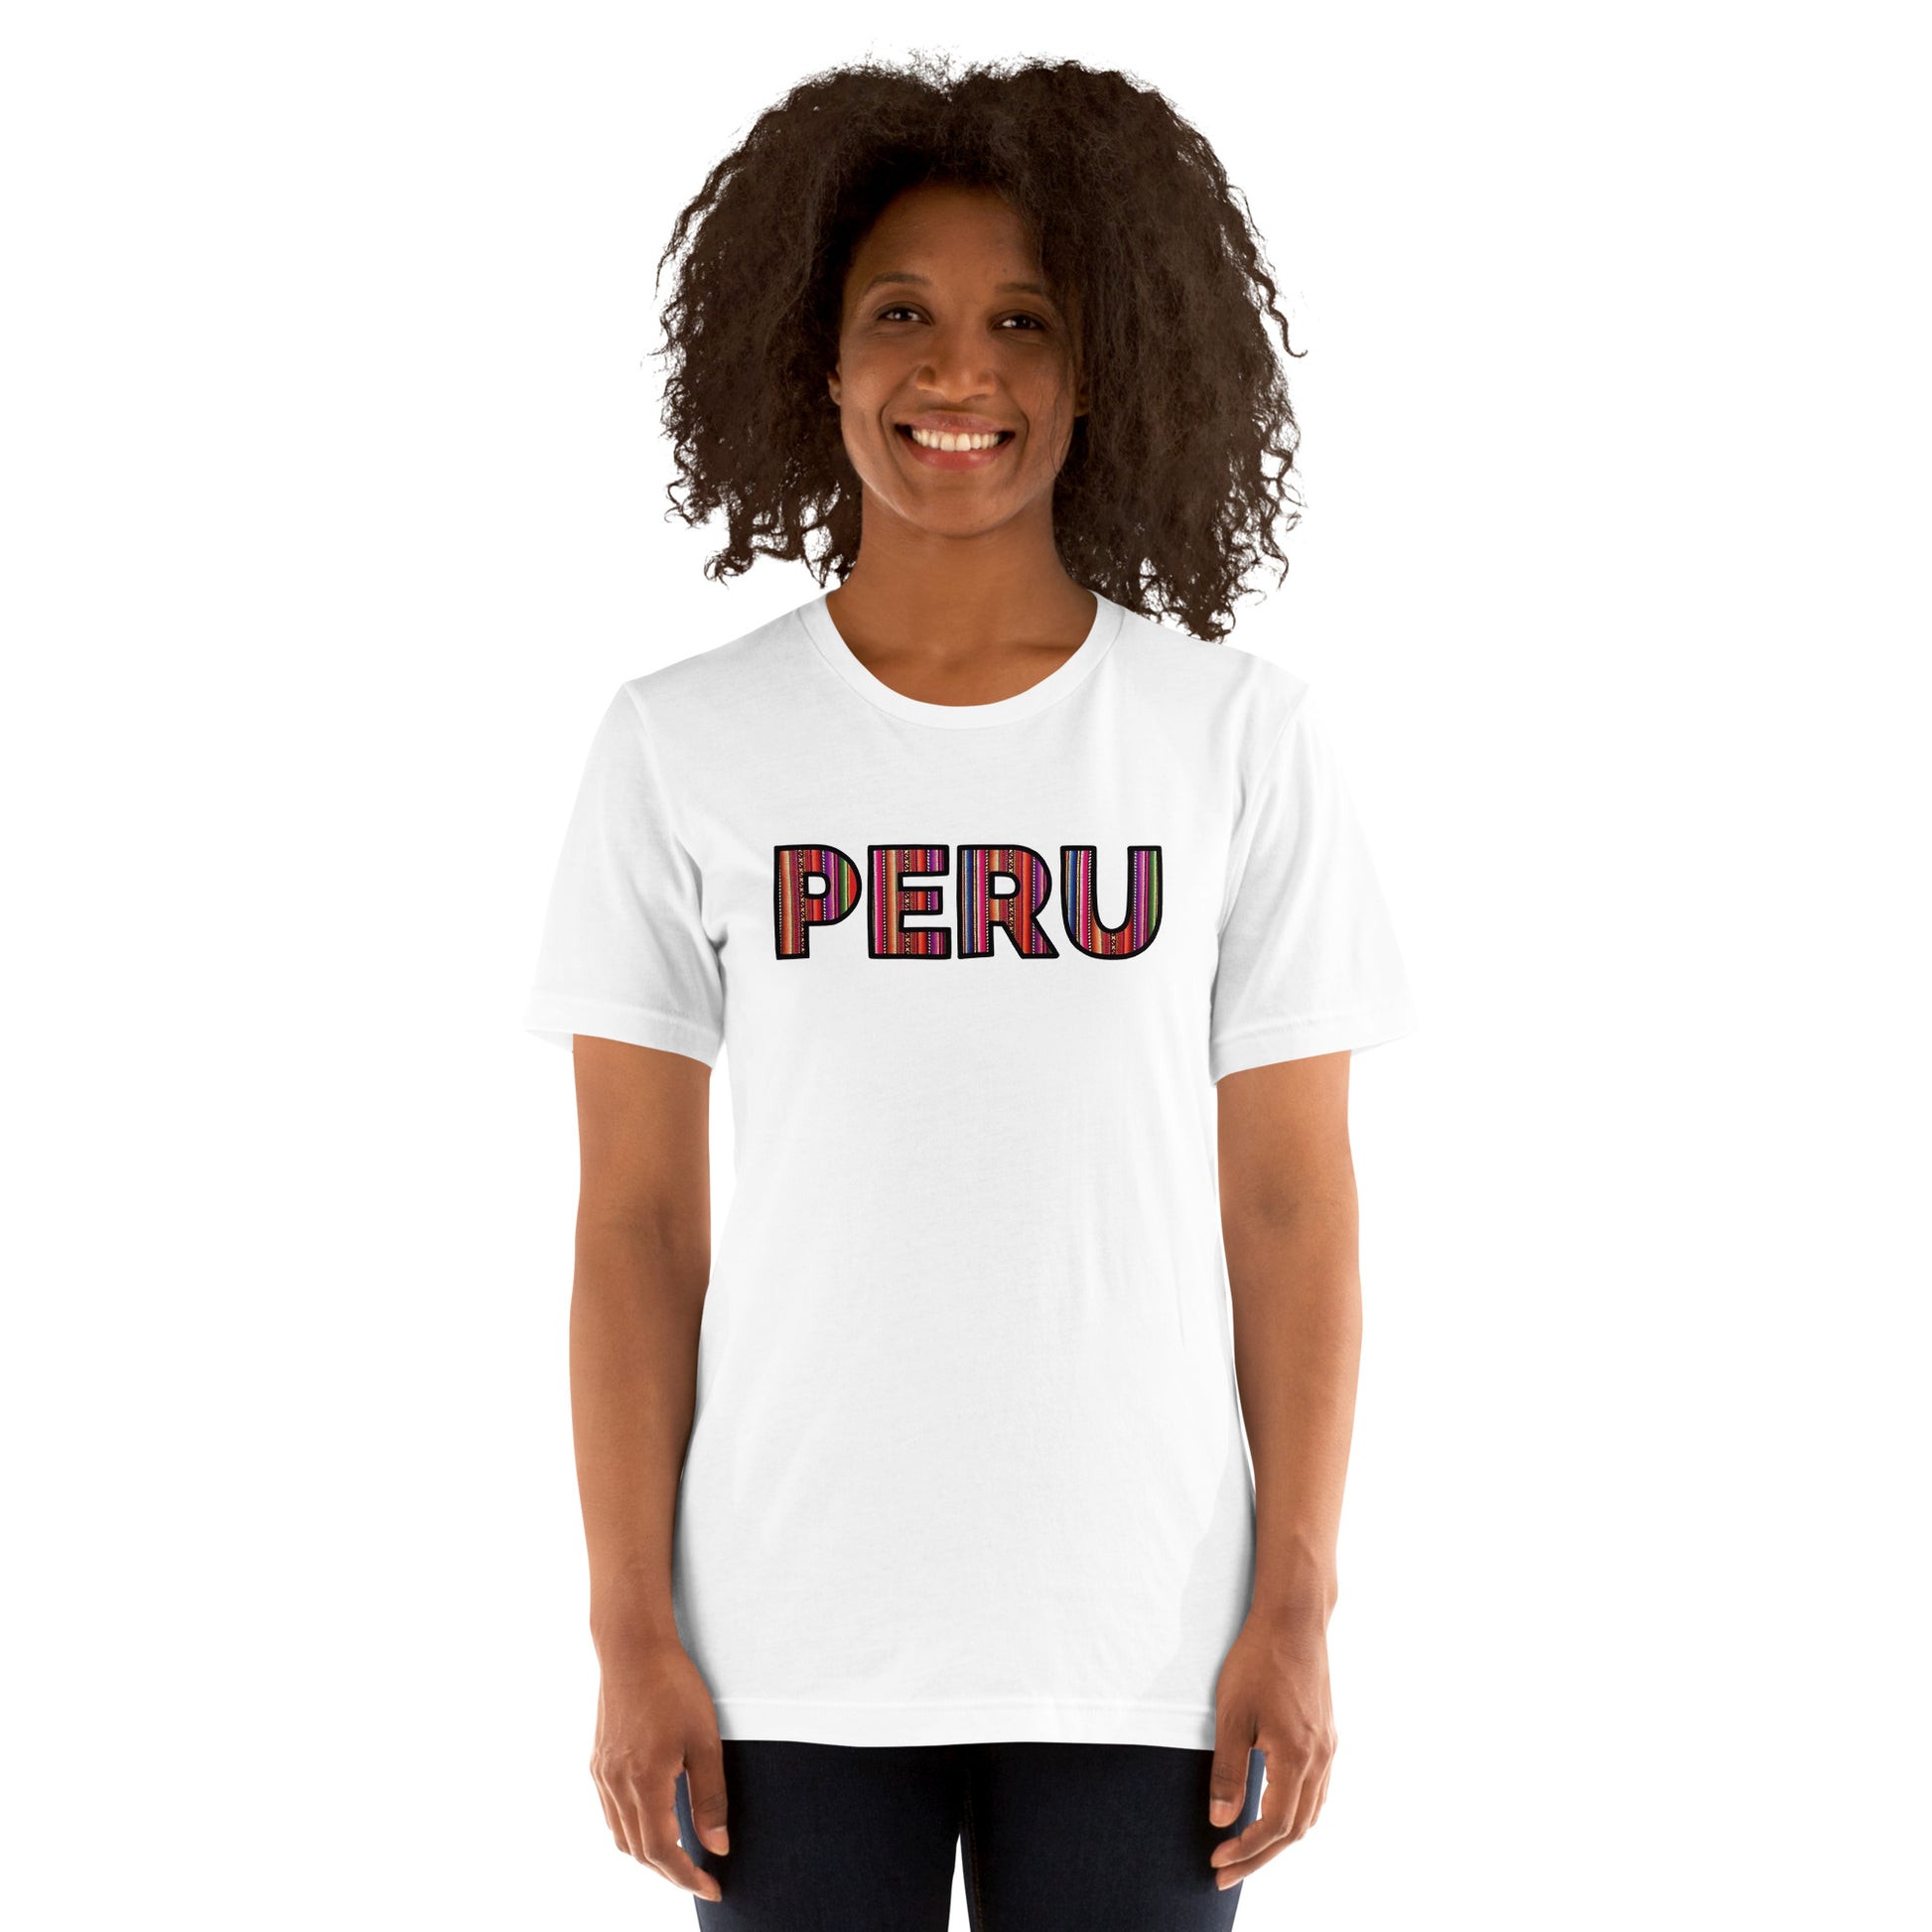 Playera de Típico Peru, Descubre calidad excepcional y estampados duraderos. Encuentra estilo y orgullo en cada prenda. Compre en LOSMIOS!